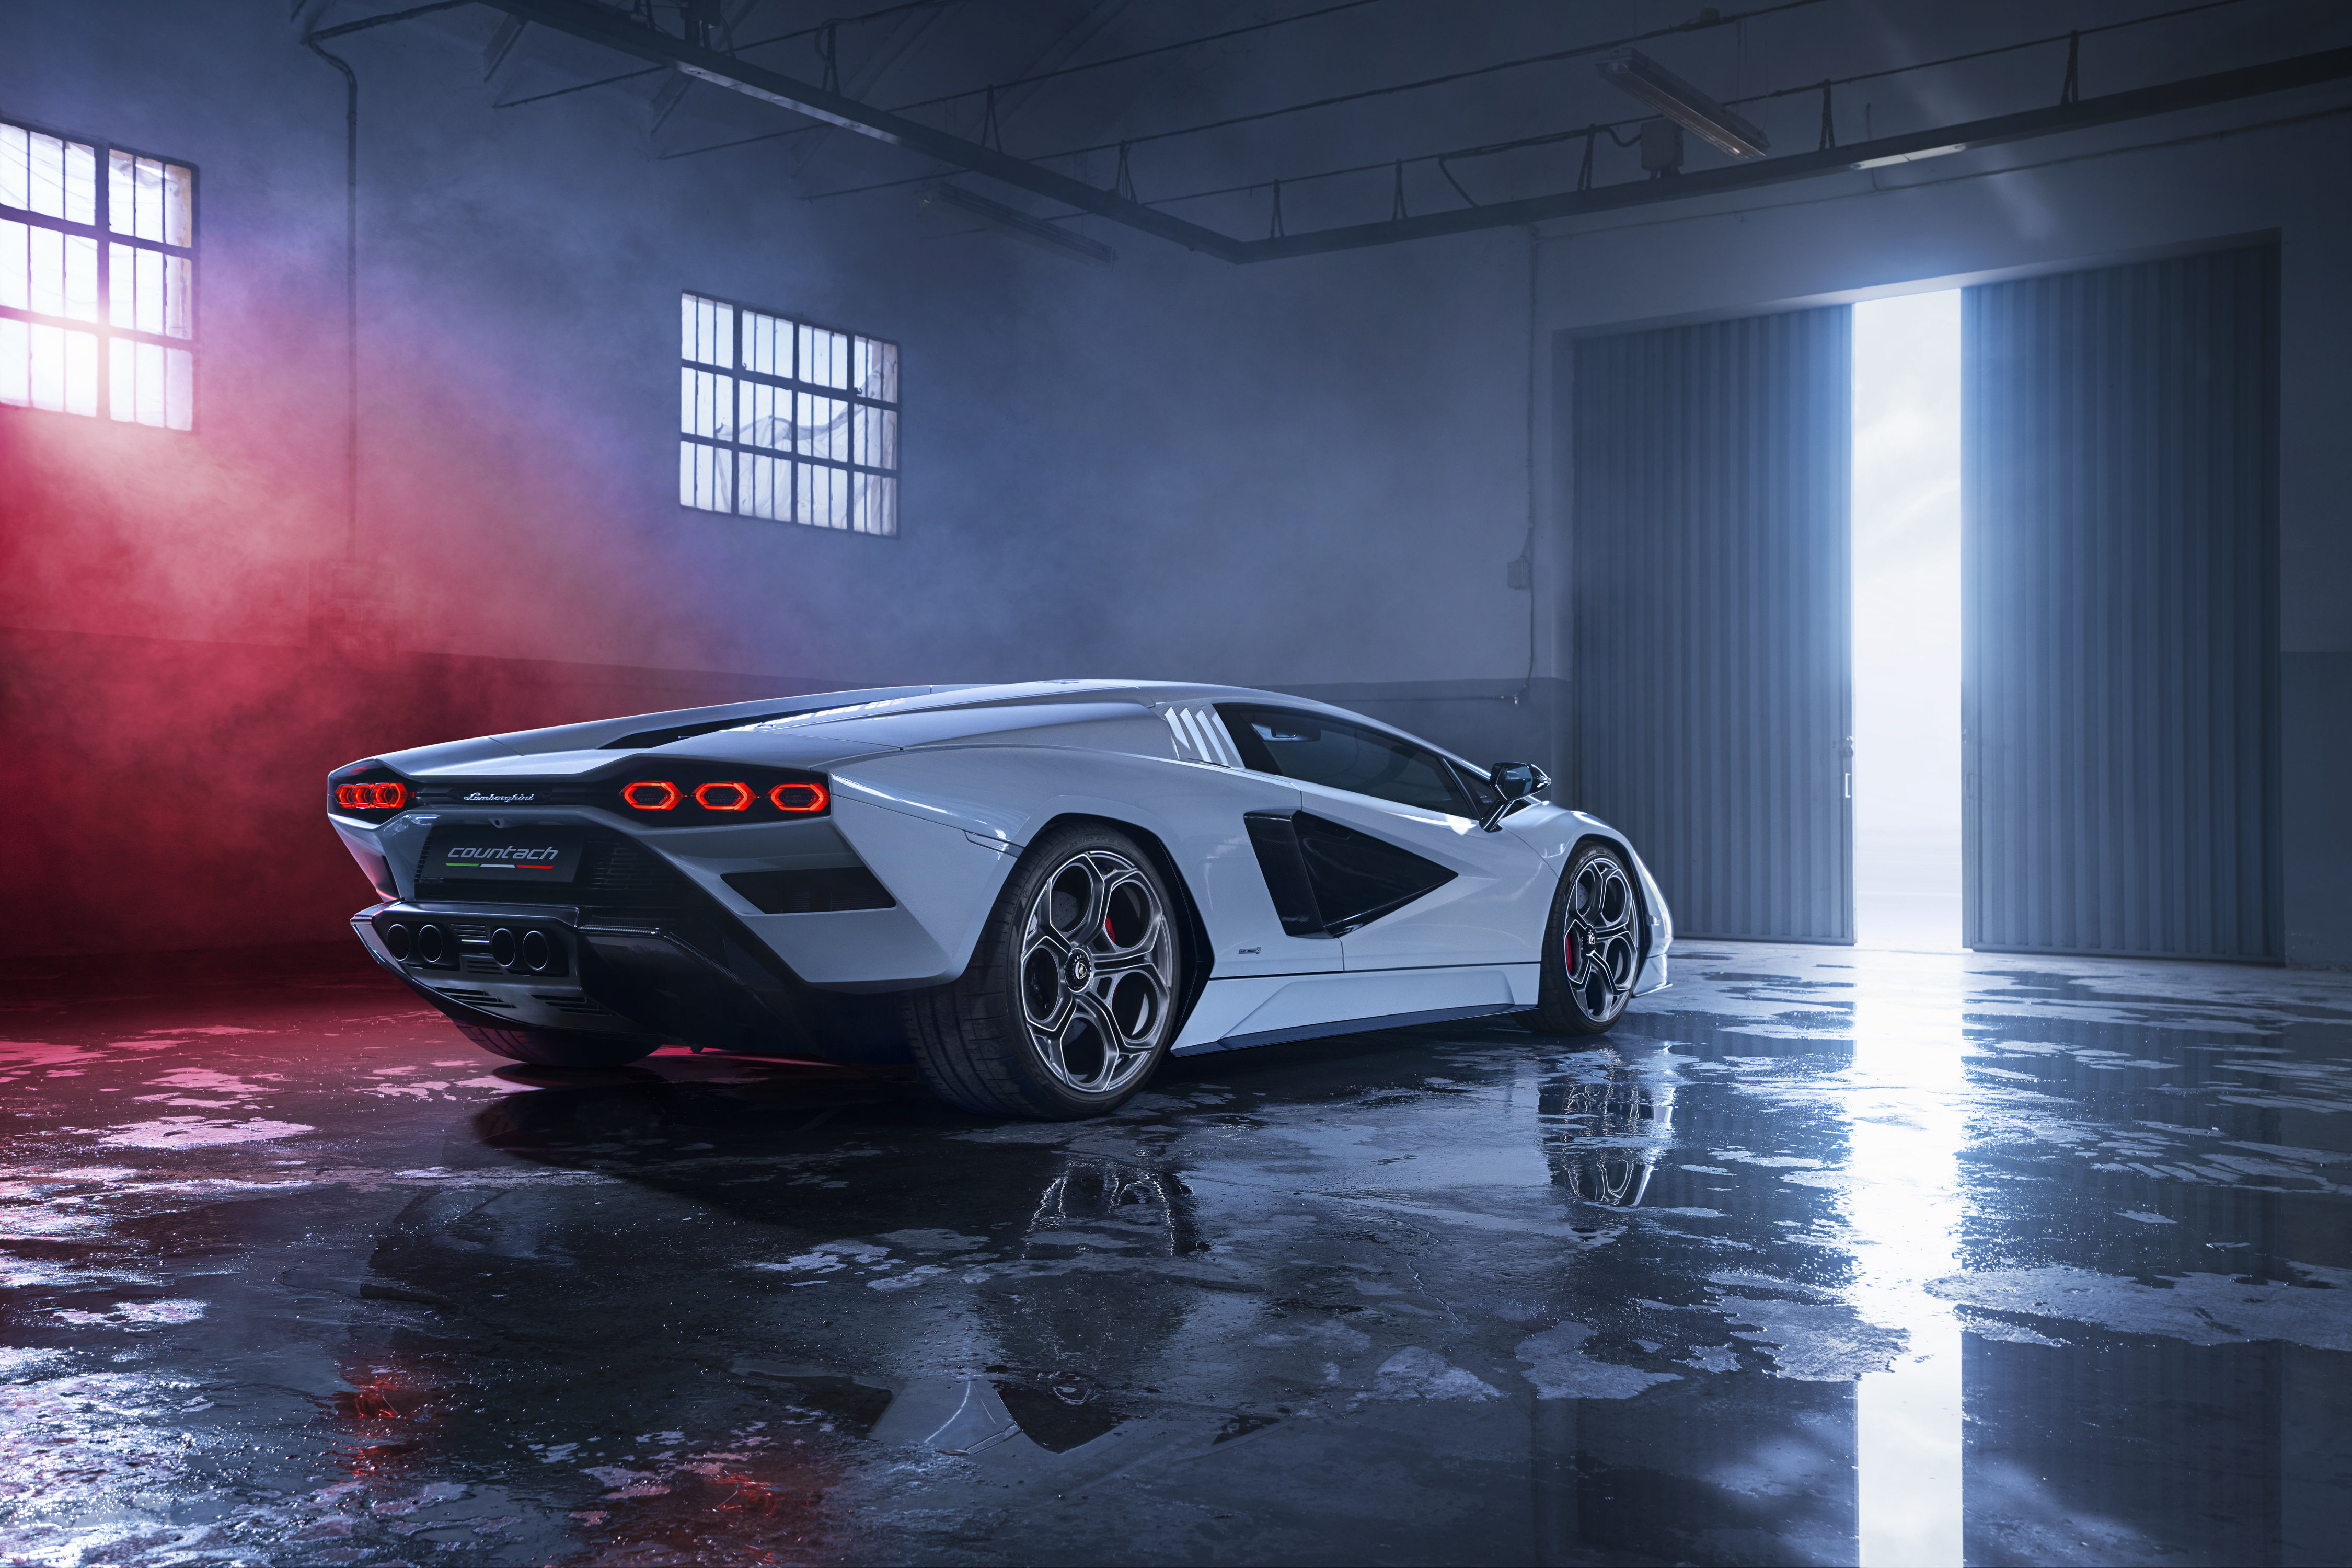 Hình nền siêu xe Lamborghini Countach LPI 800-4 4k Ultra HD chắc chắn sẽ khiến bạn trầm trồ với vẻ đẹp ngoạn mục của chiếc xe này. Thiết kế mới lạ, bắt mắt và hiện đại cùng với nhiều tính năng thông minh và công nghệ tiên tiến sẽ khiến bạn cảm thấy thích thú khi xem hình ảnh này.